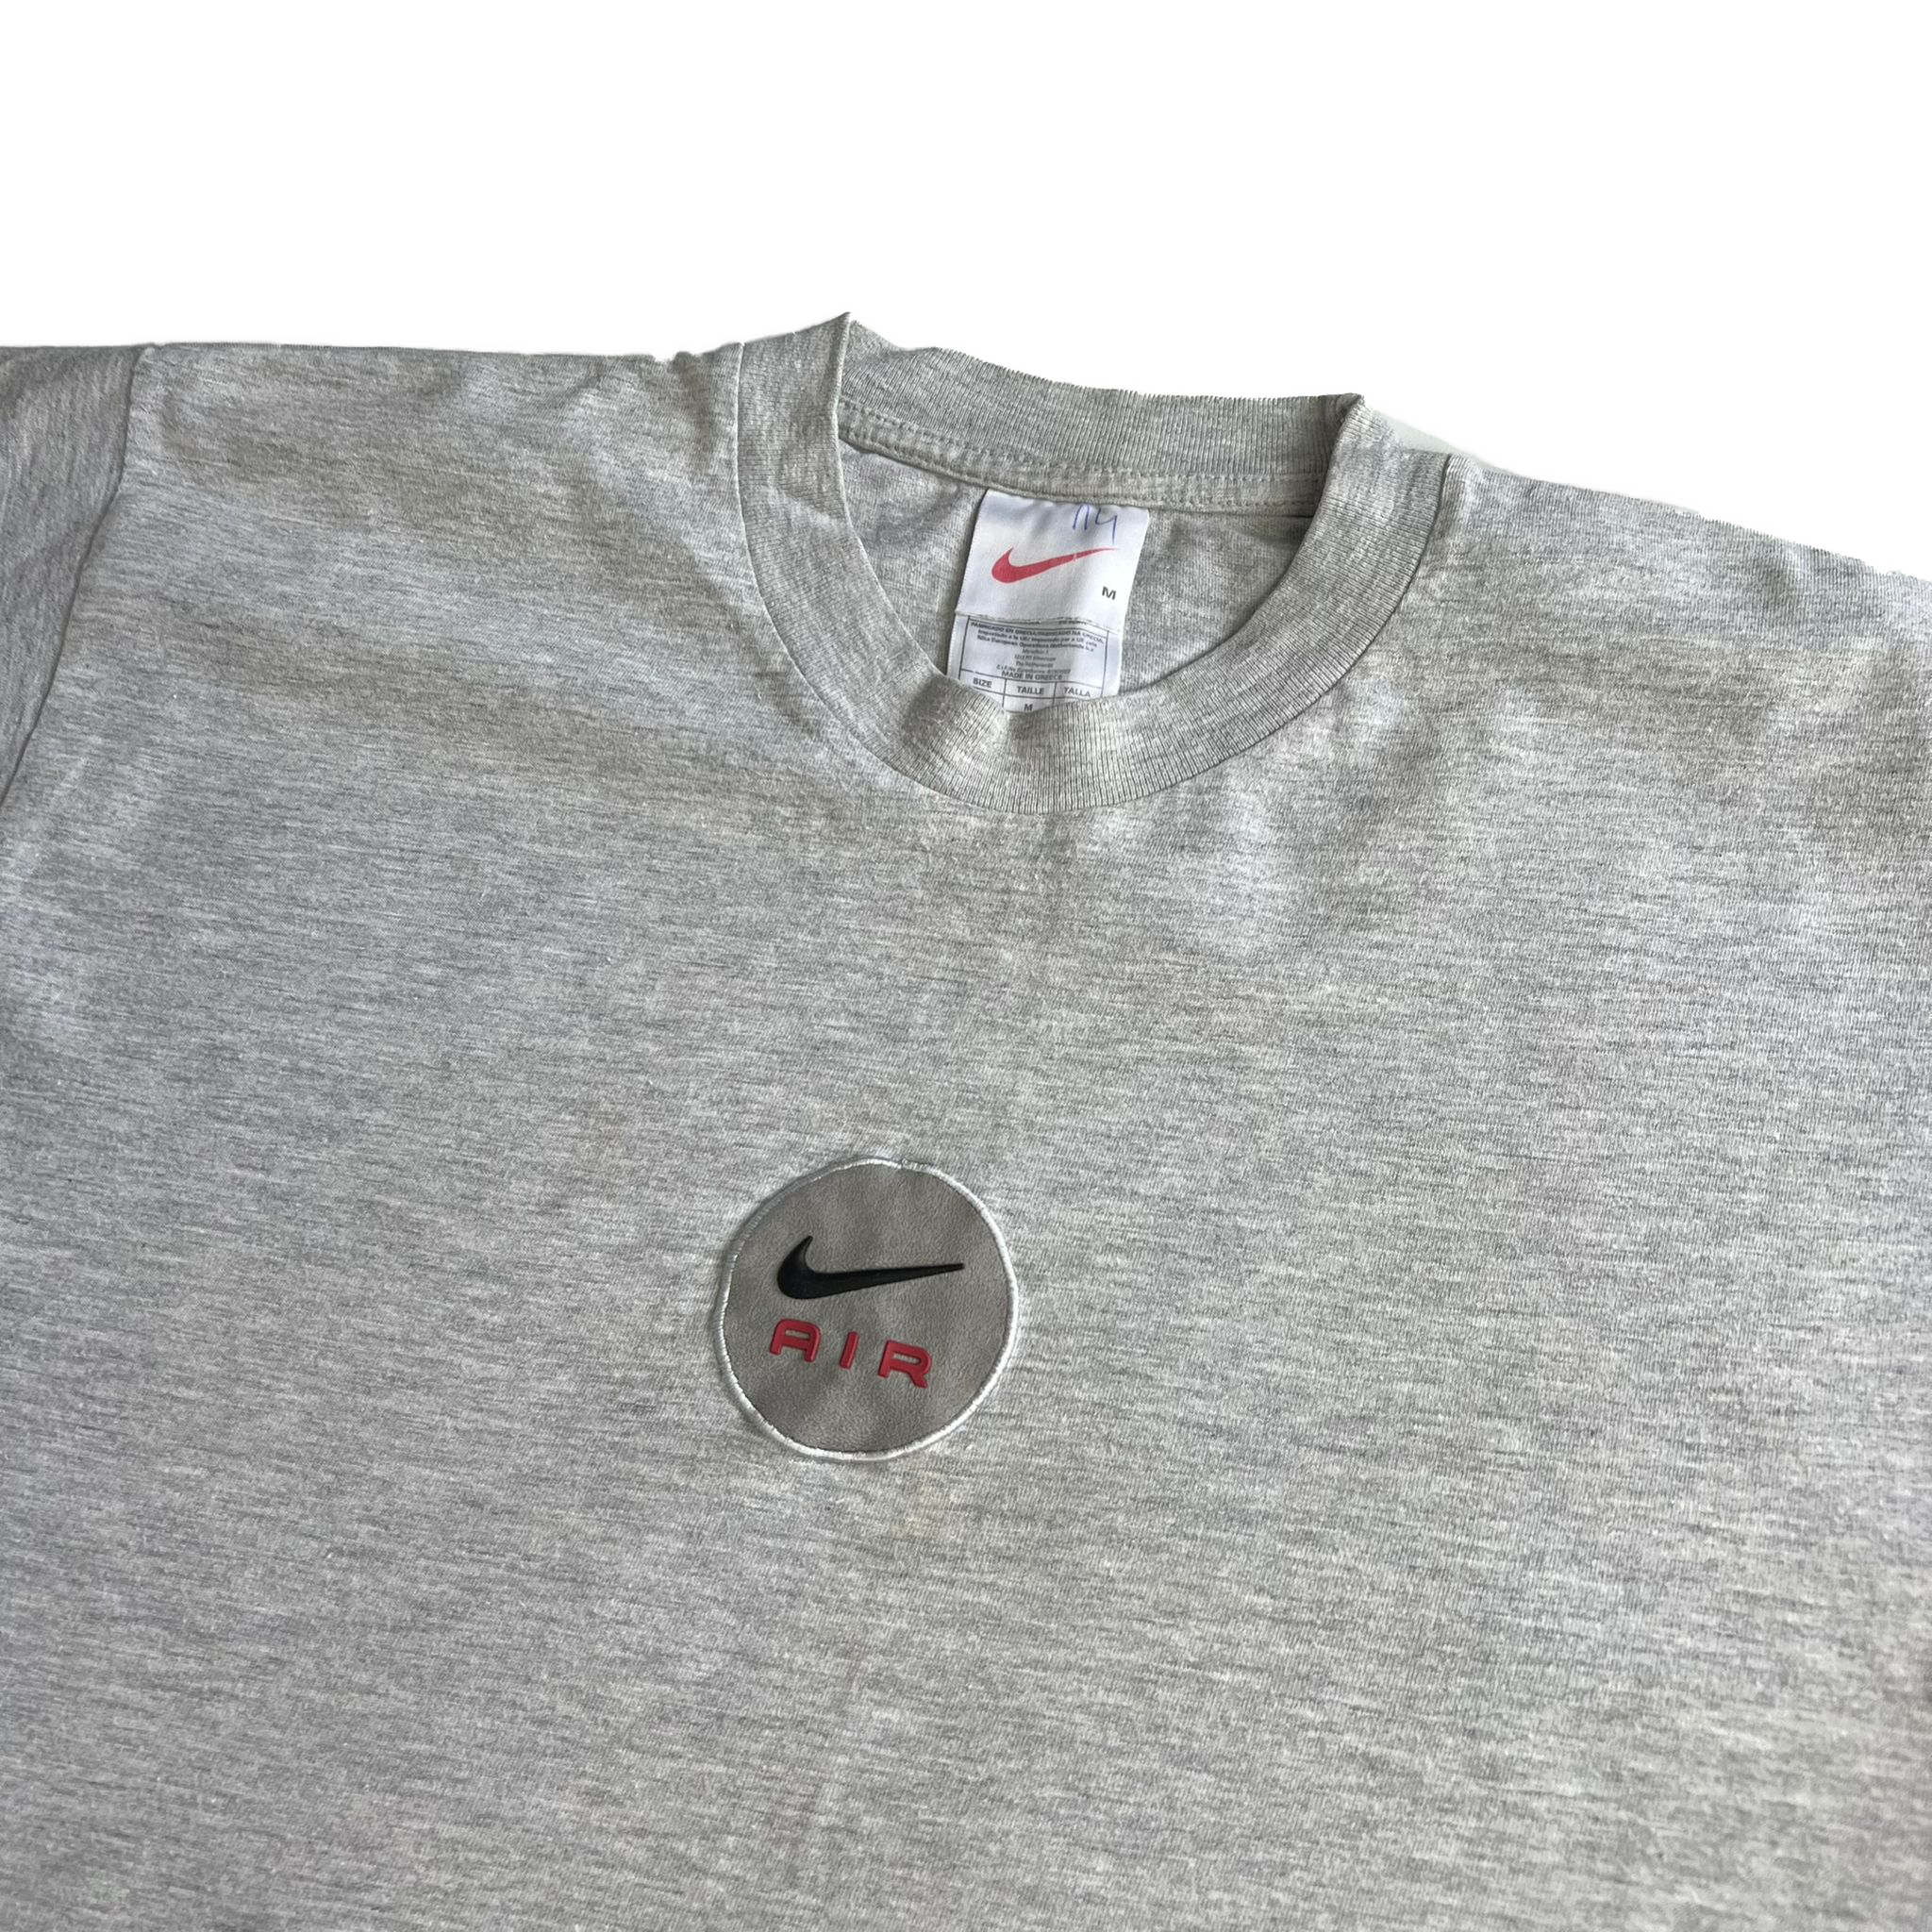 90's Nike Air t-shirt